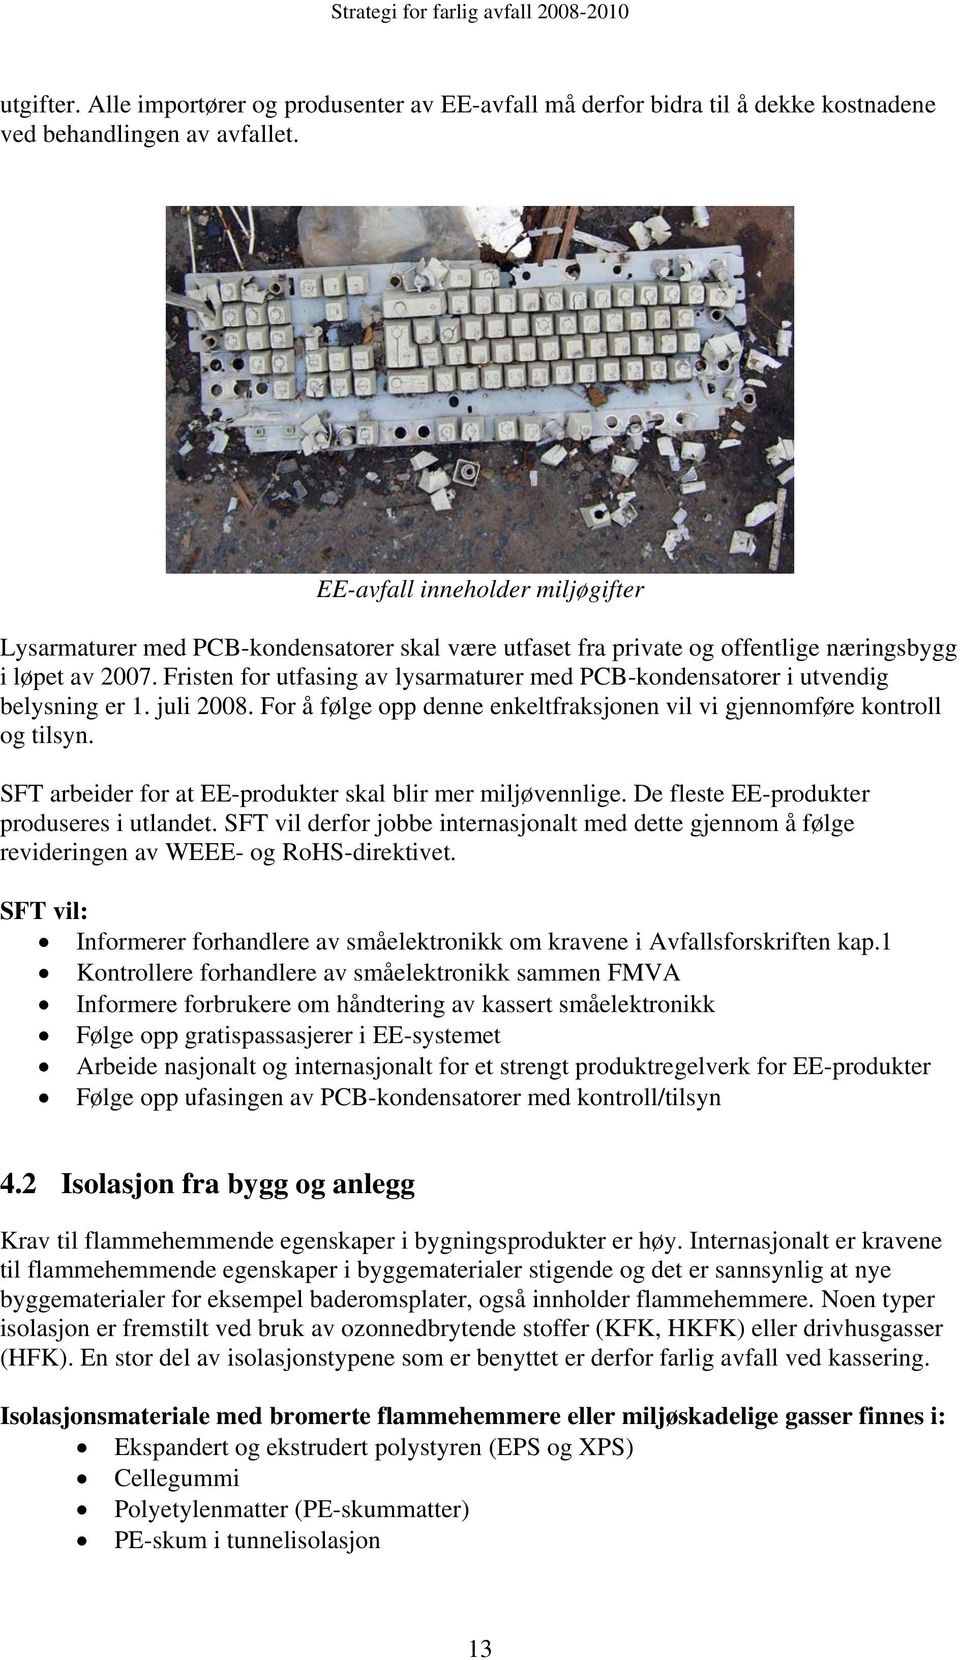 Fristen for utfasing av lysarmaturer med PCB-kondensatorer i utvendig belysning er 1. juli 2008. For å følge opp denne enkeltfraksjonen vil vi gjennomføre kontroll og tilsyn.